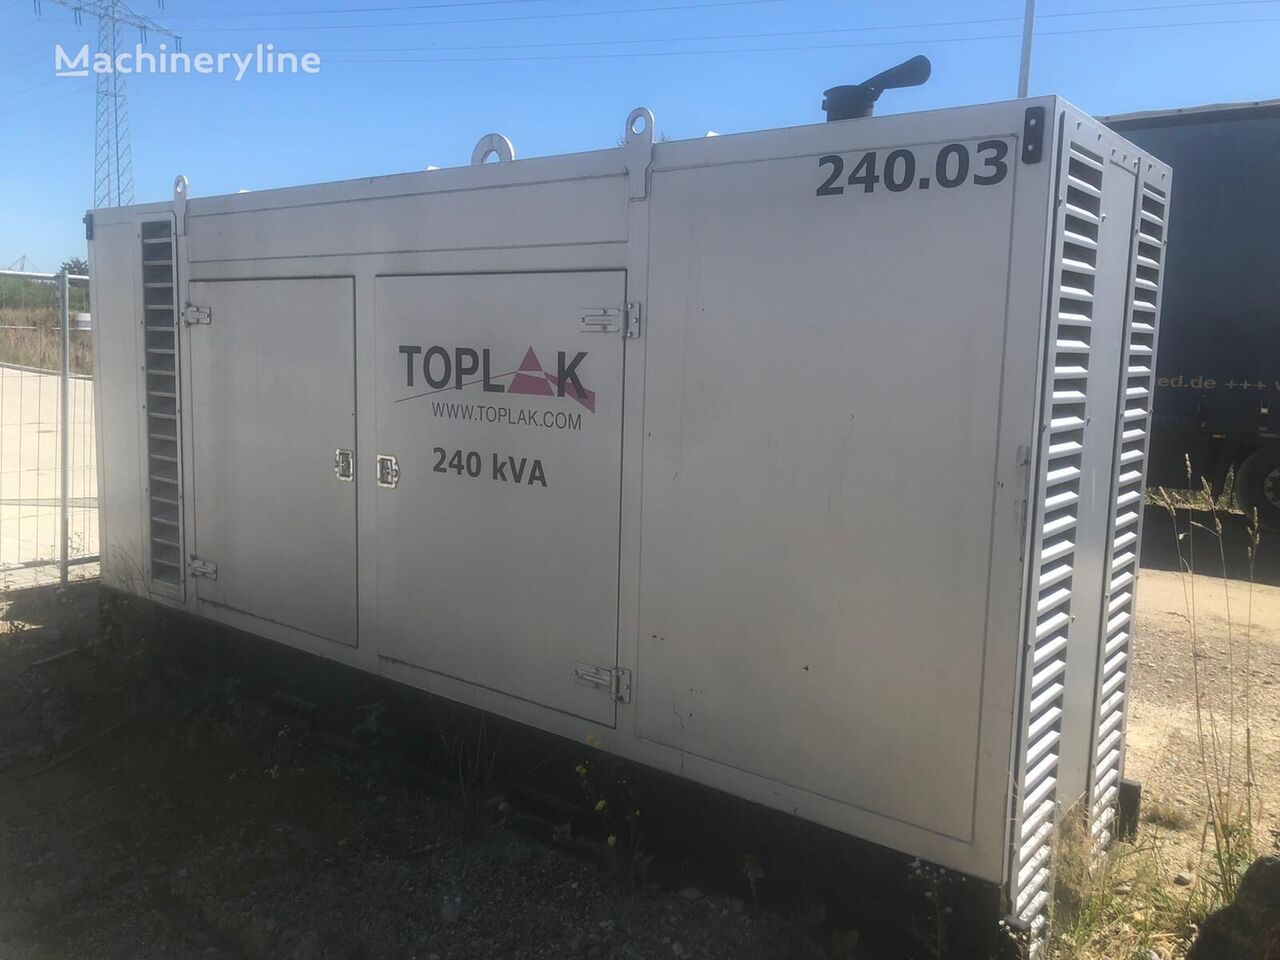 Deutz-Fahr Toplak 240 KVA dieselgenerator